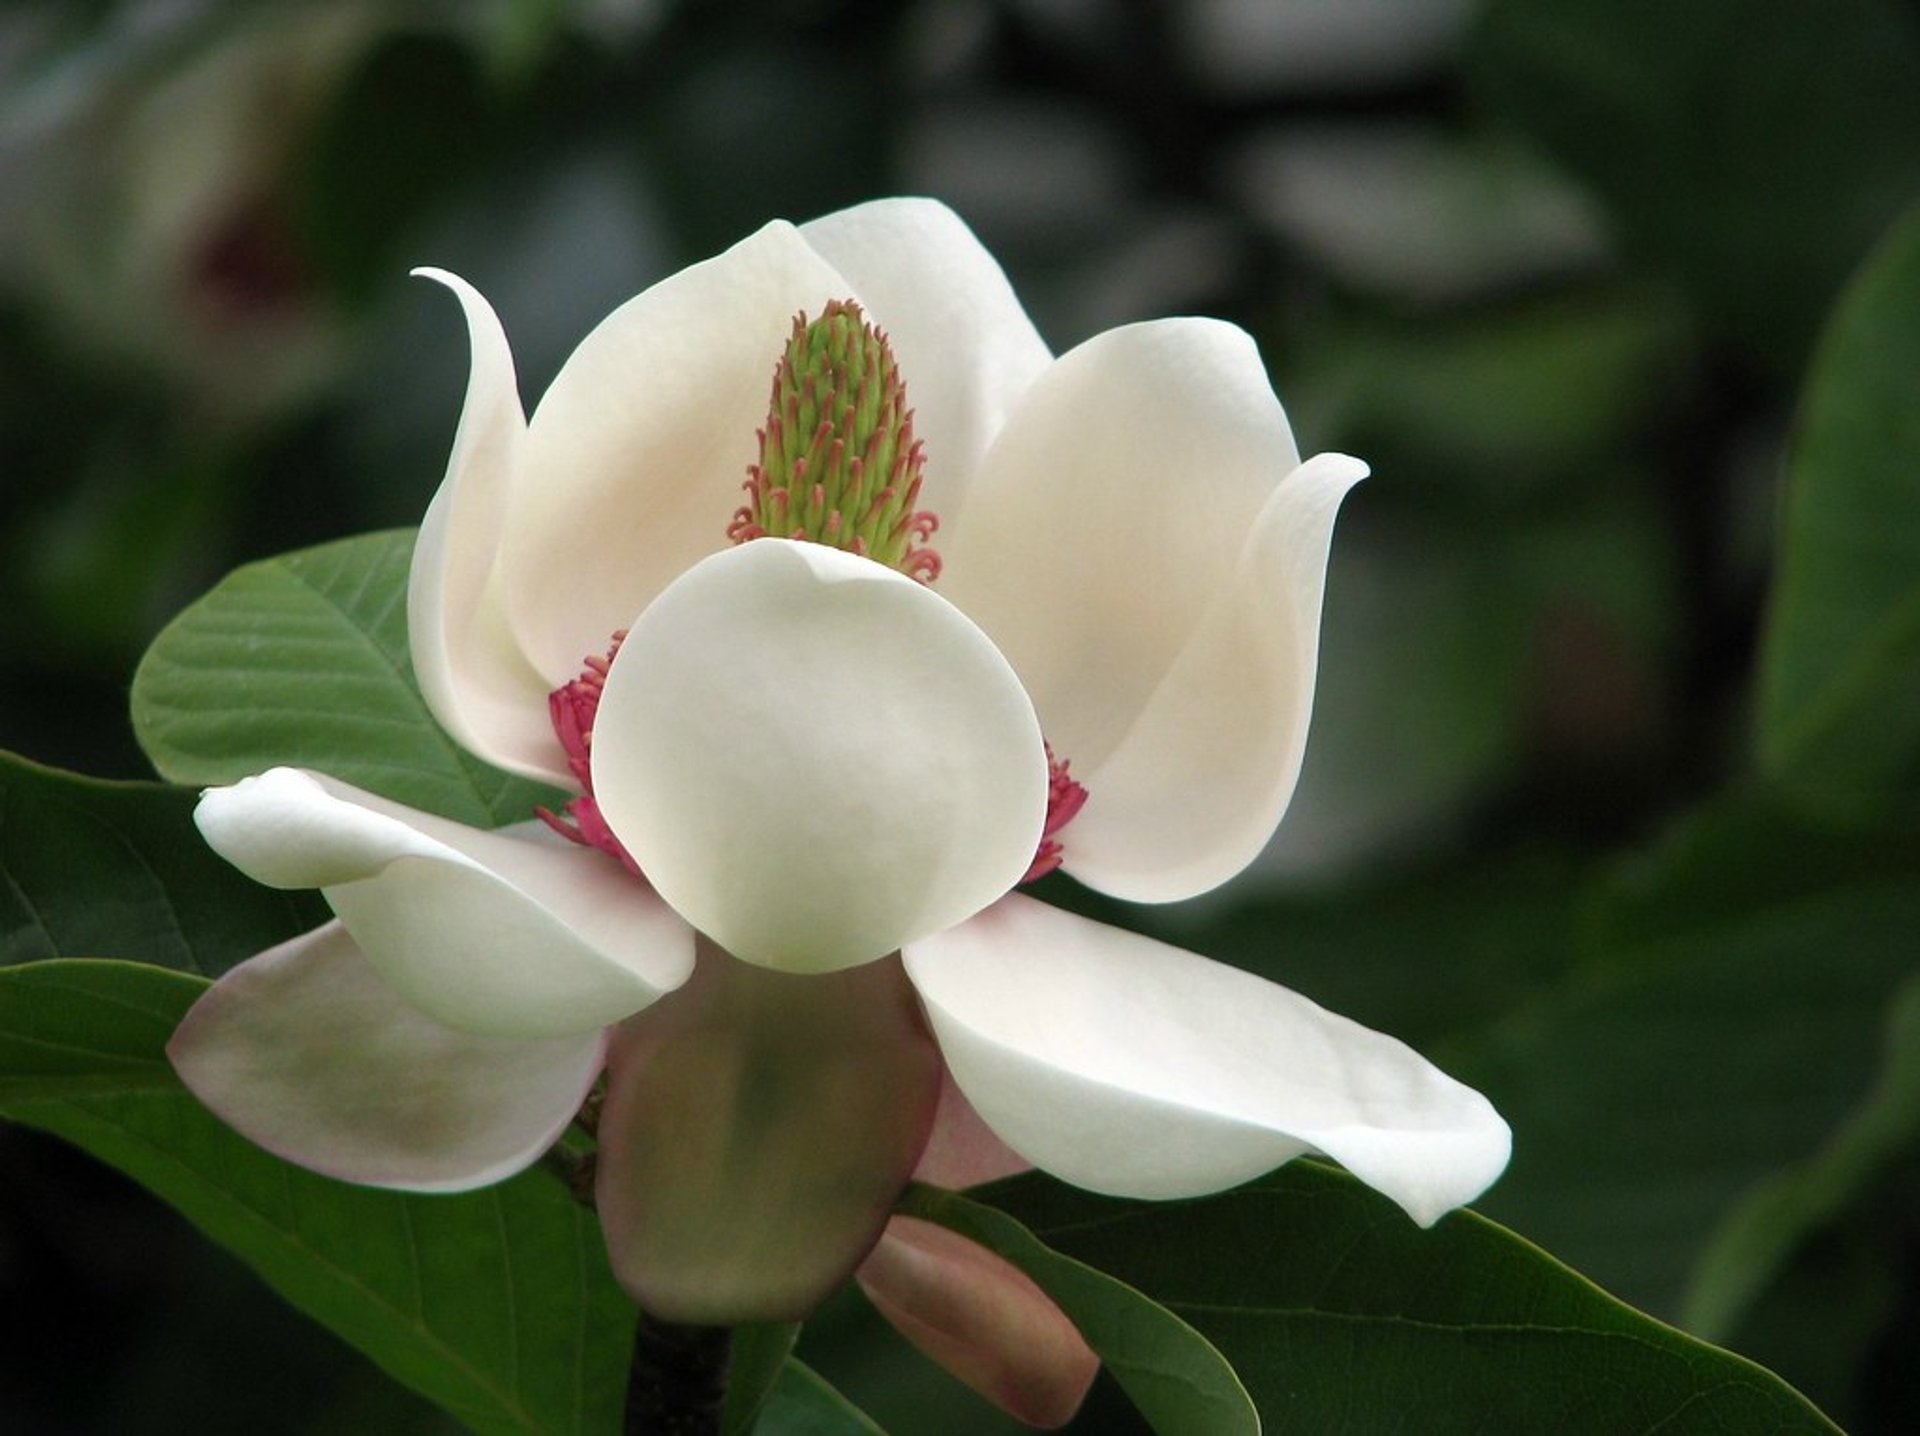 Magnolias en el Jardín Botánico Meise